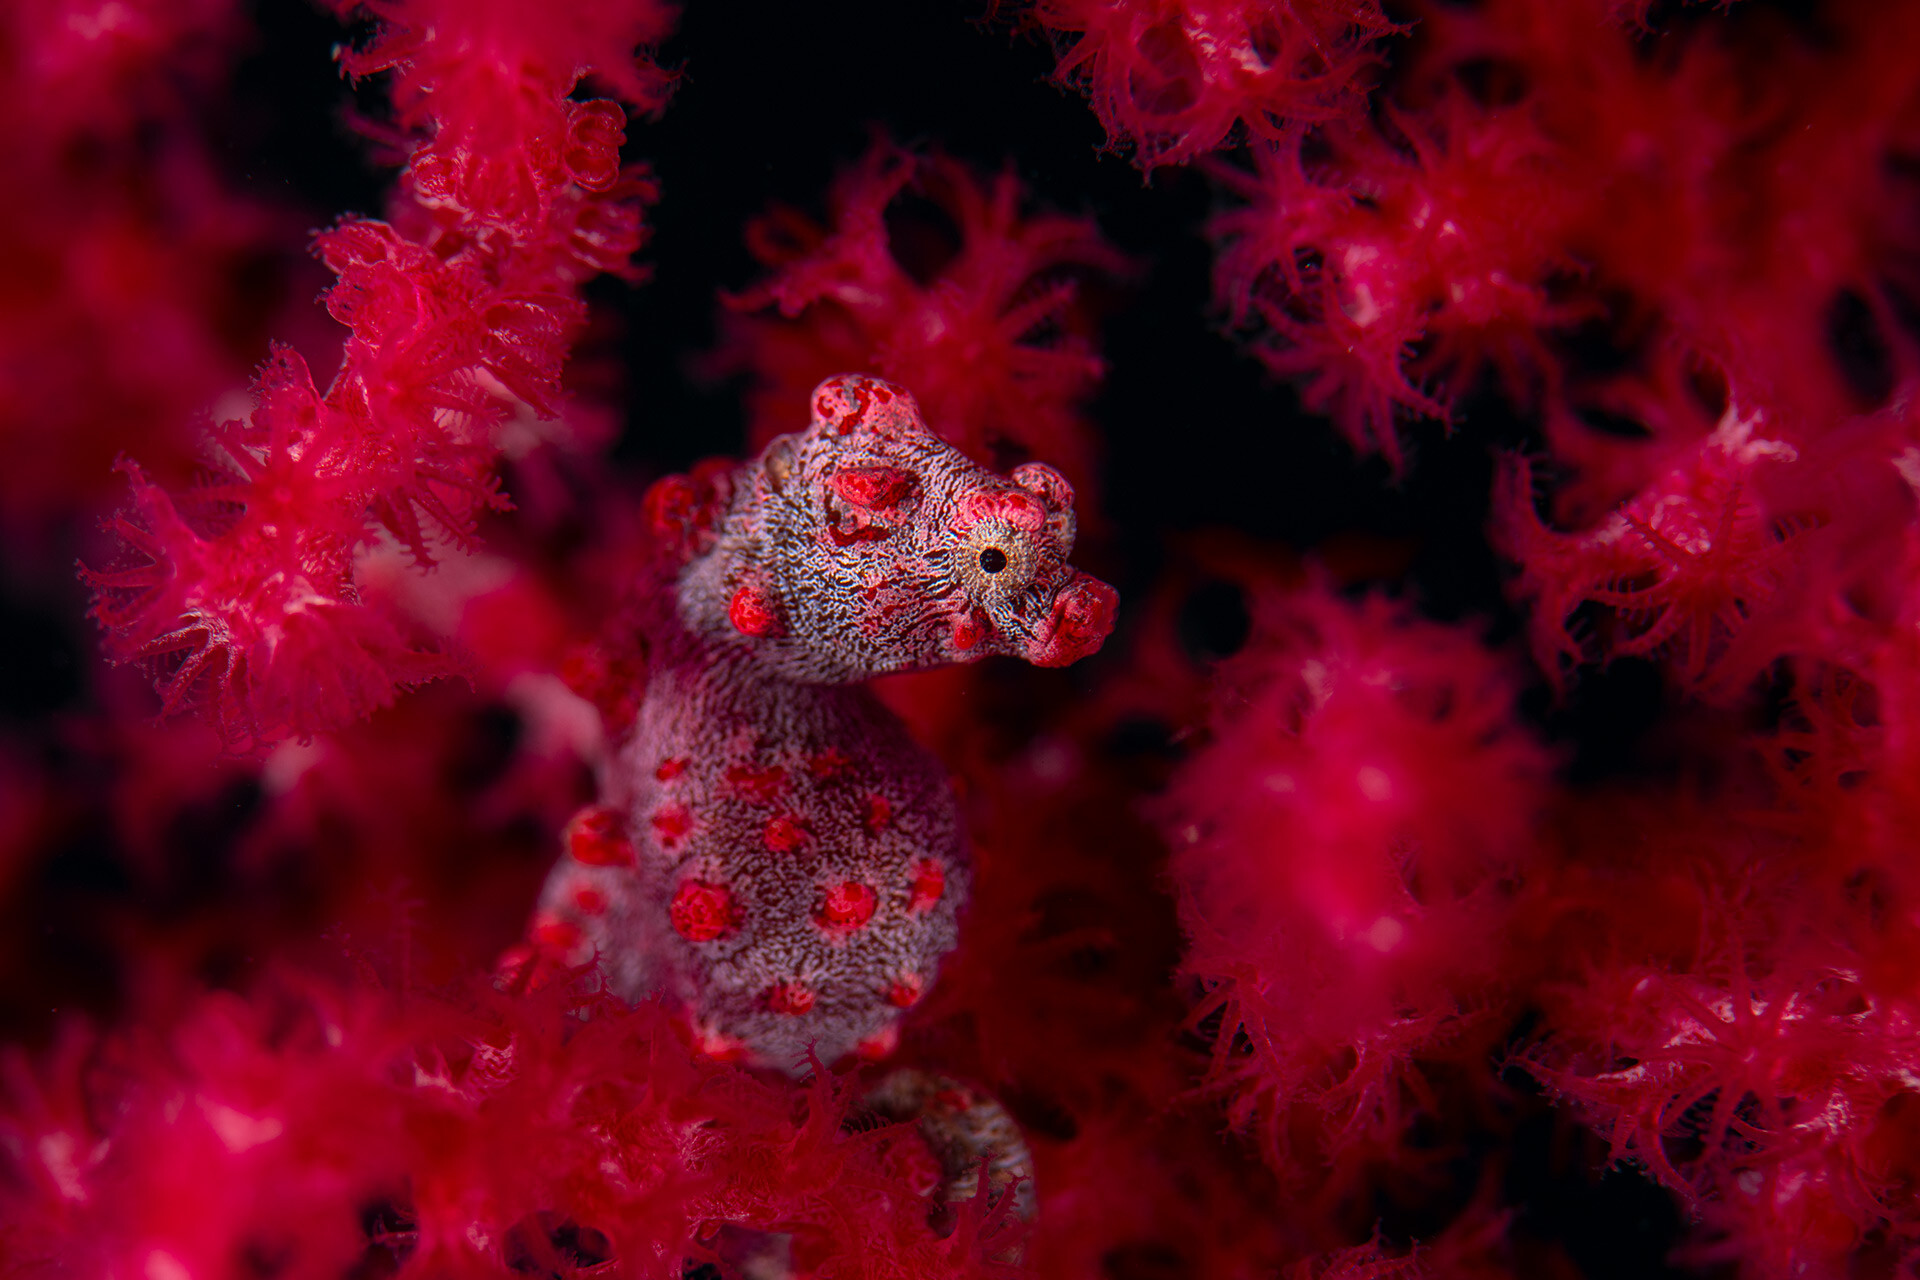 1 место в категории Под водой, 2021. Красный в красном. Карликовый морской конёк – мастер маскировки в горгоновых кораллах. Автор Георг Нис